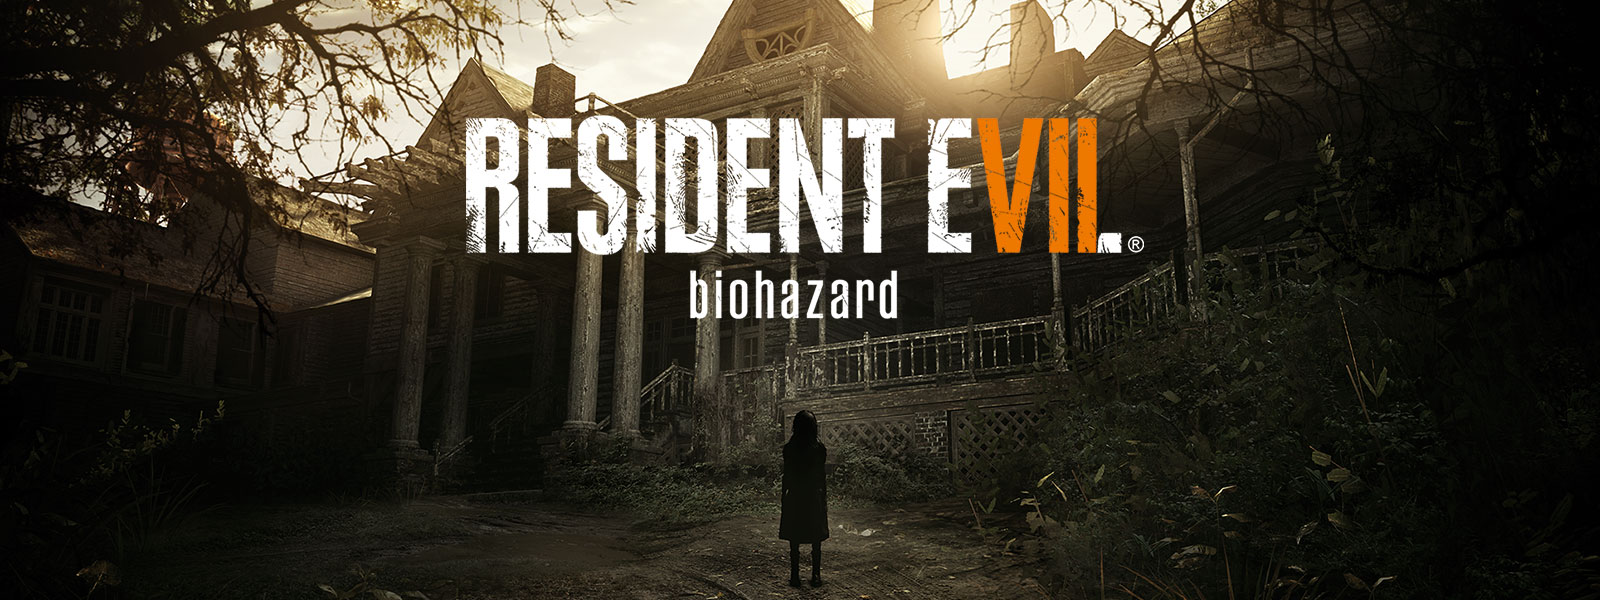 Resident Evil 7 Biohazard Gold Edition. Bild på förpackningen av en scen med en spöklik flicka framför ett hemsökt hus